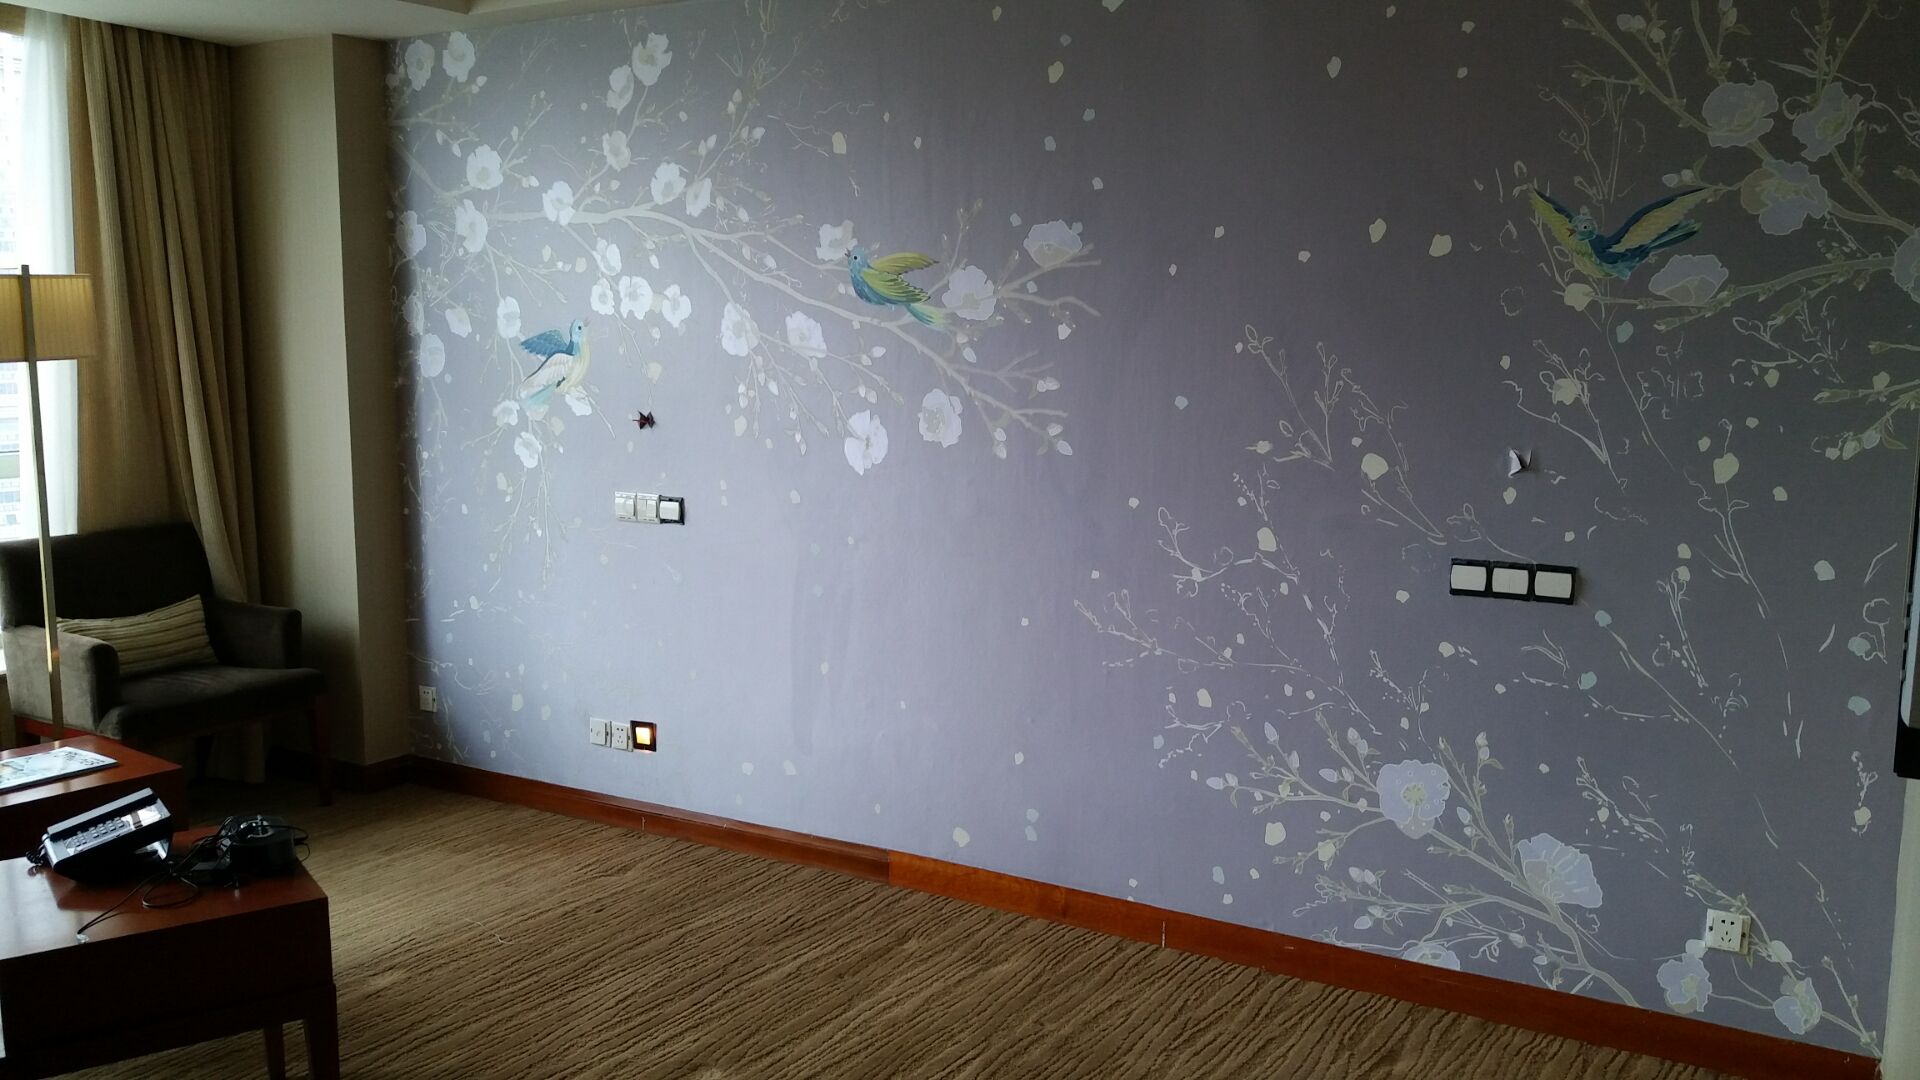 酒店房间壁画/宾馆房间壁画/姿彩壁画